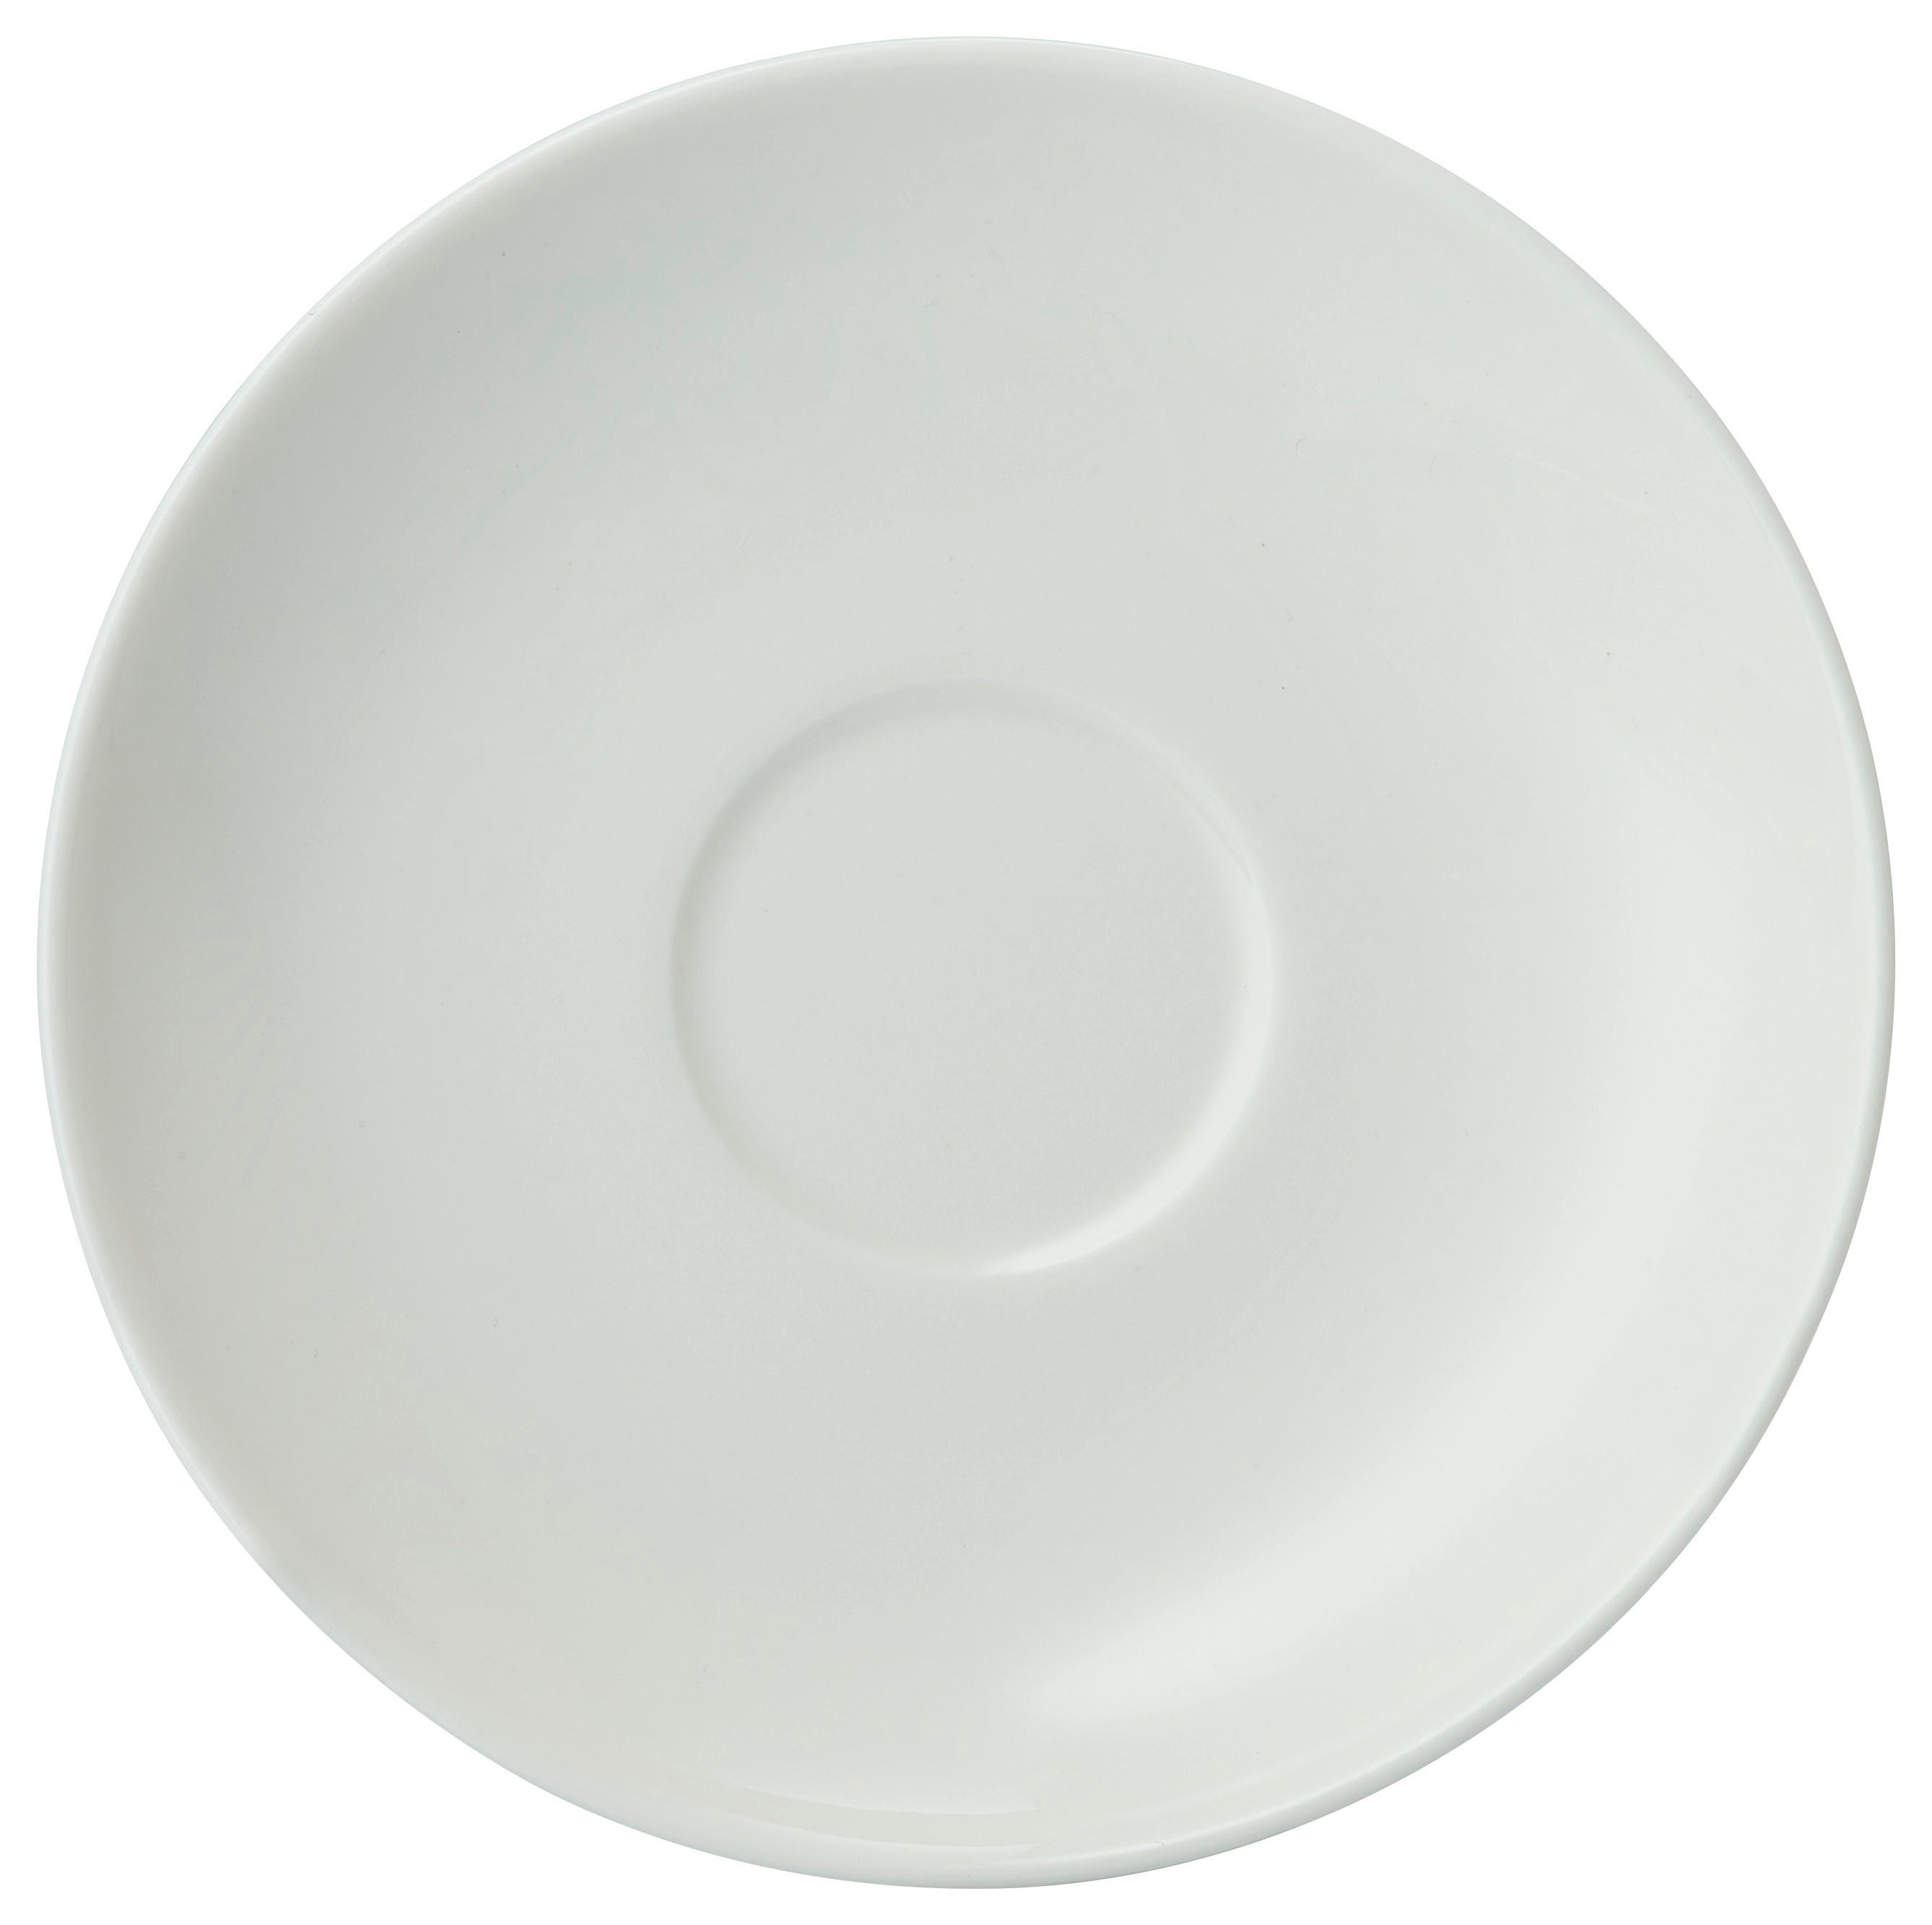 ESPRESSO-UNTERTASSE Basic White 12 cm  - Weiß, KONVENTIONELL, Keramik (12cm) - Villeroy & Boch